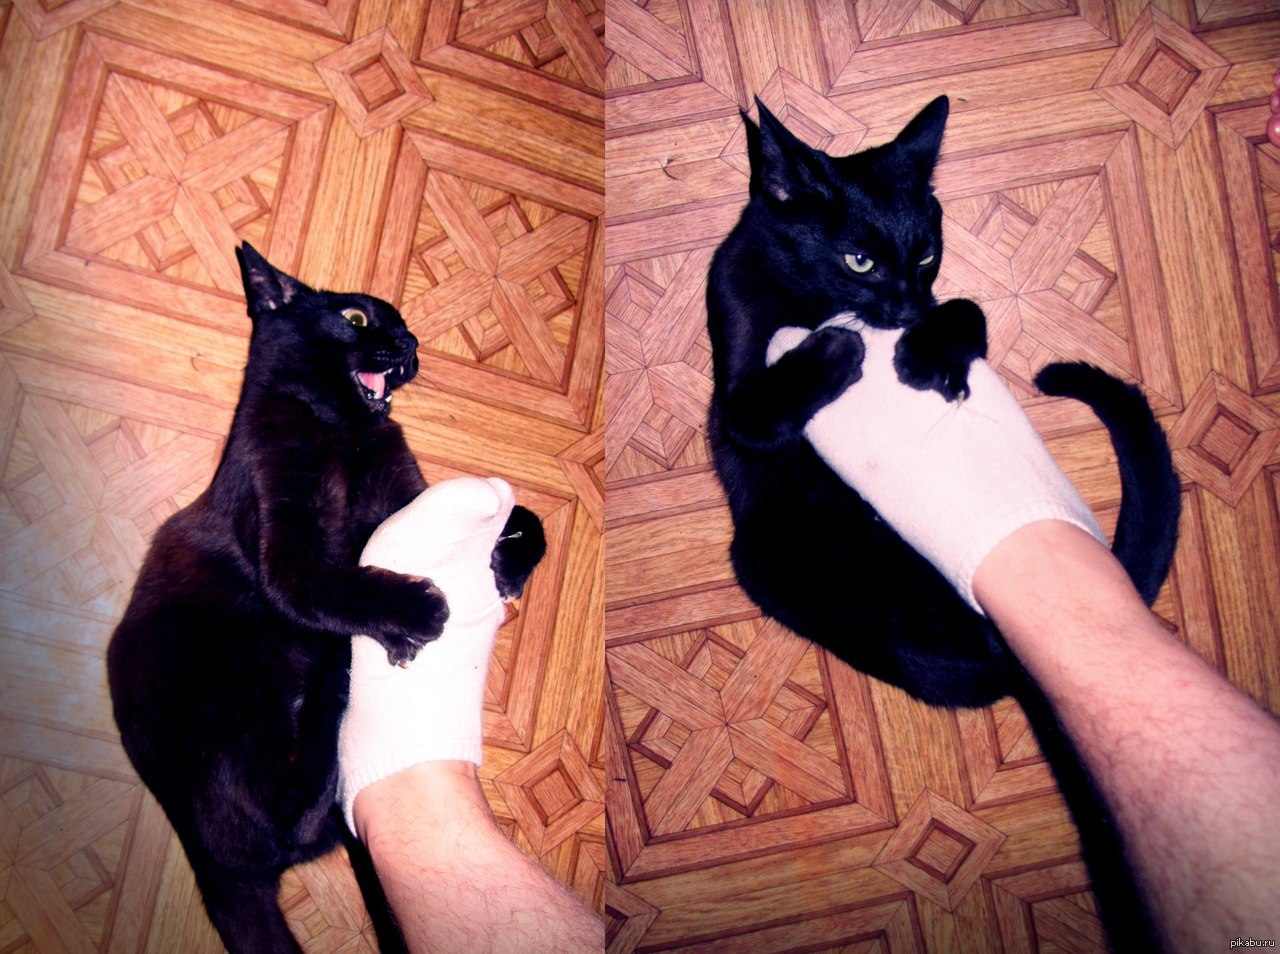 Почему кот кусает за ноги хозяйку: когда гладишь и без причины